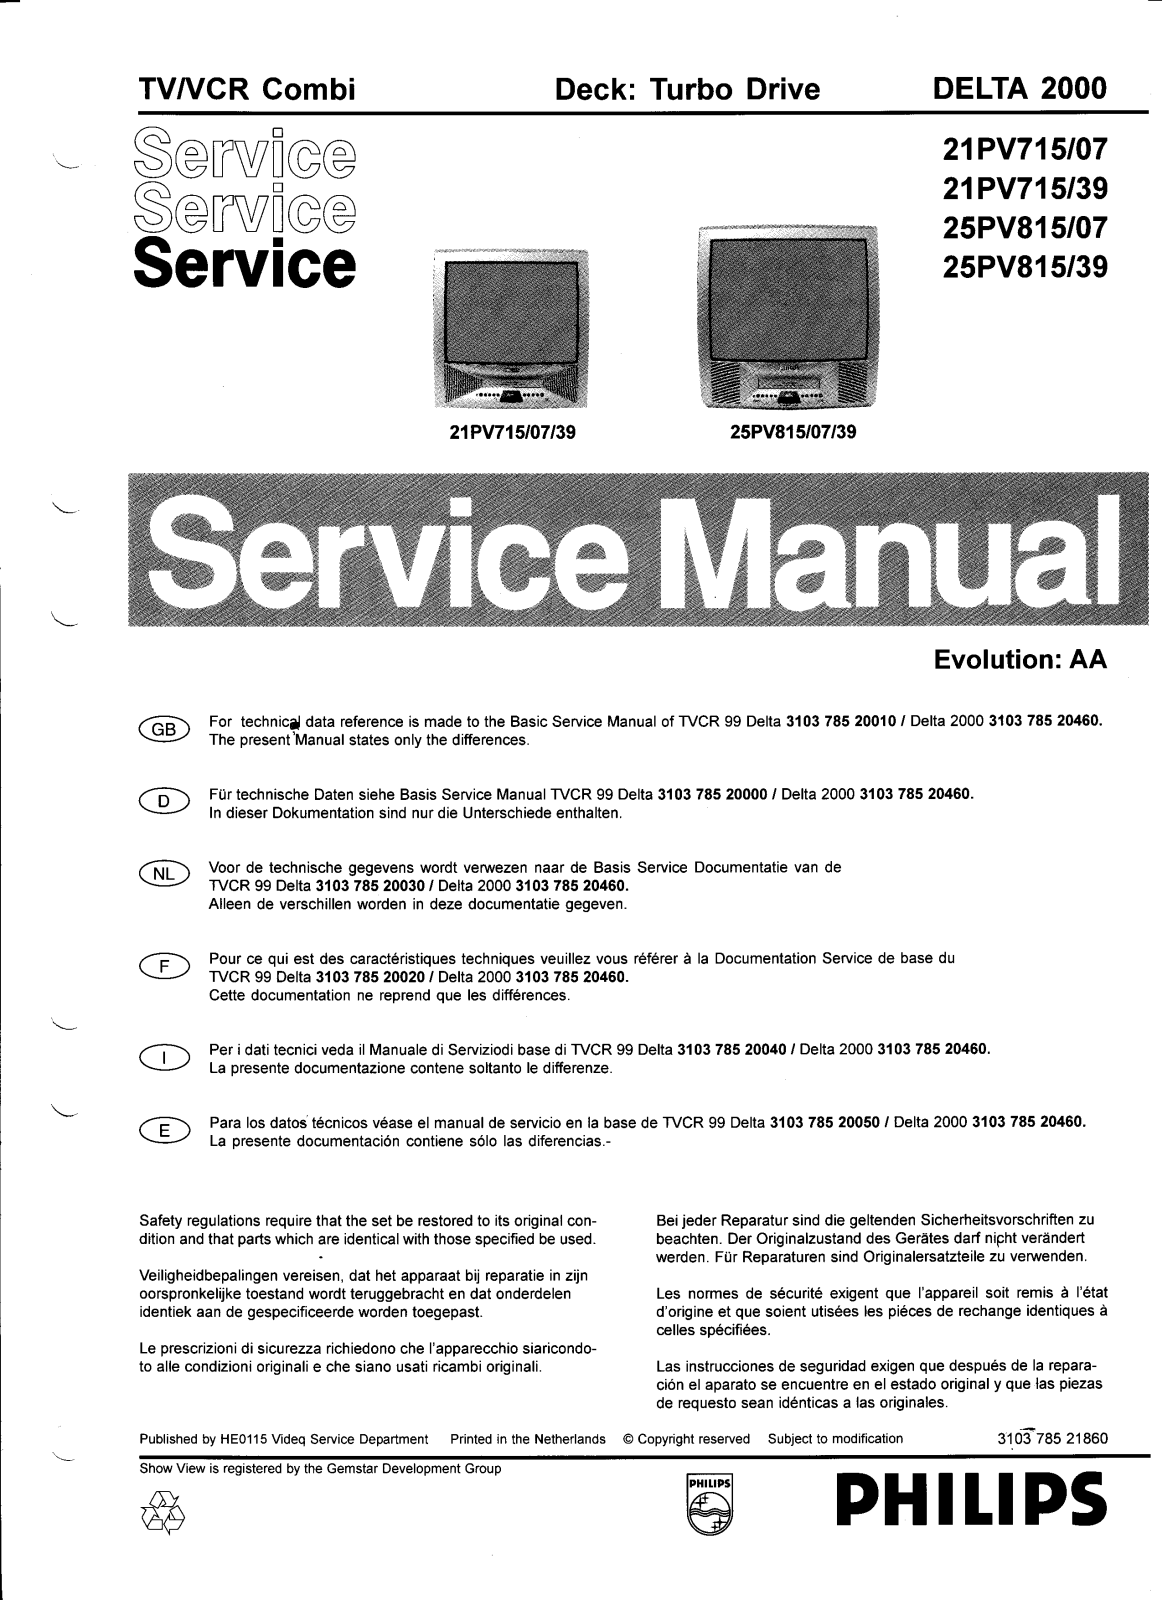 Philips Delta2000 Service Manual